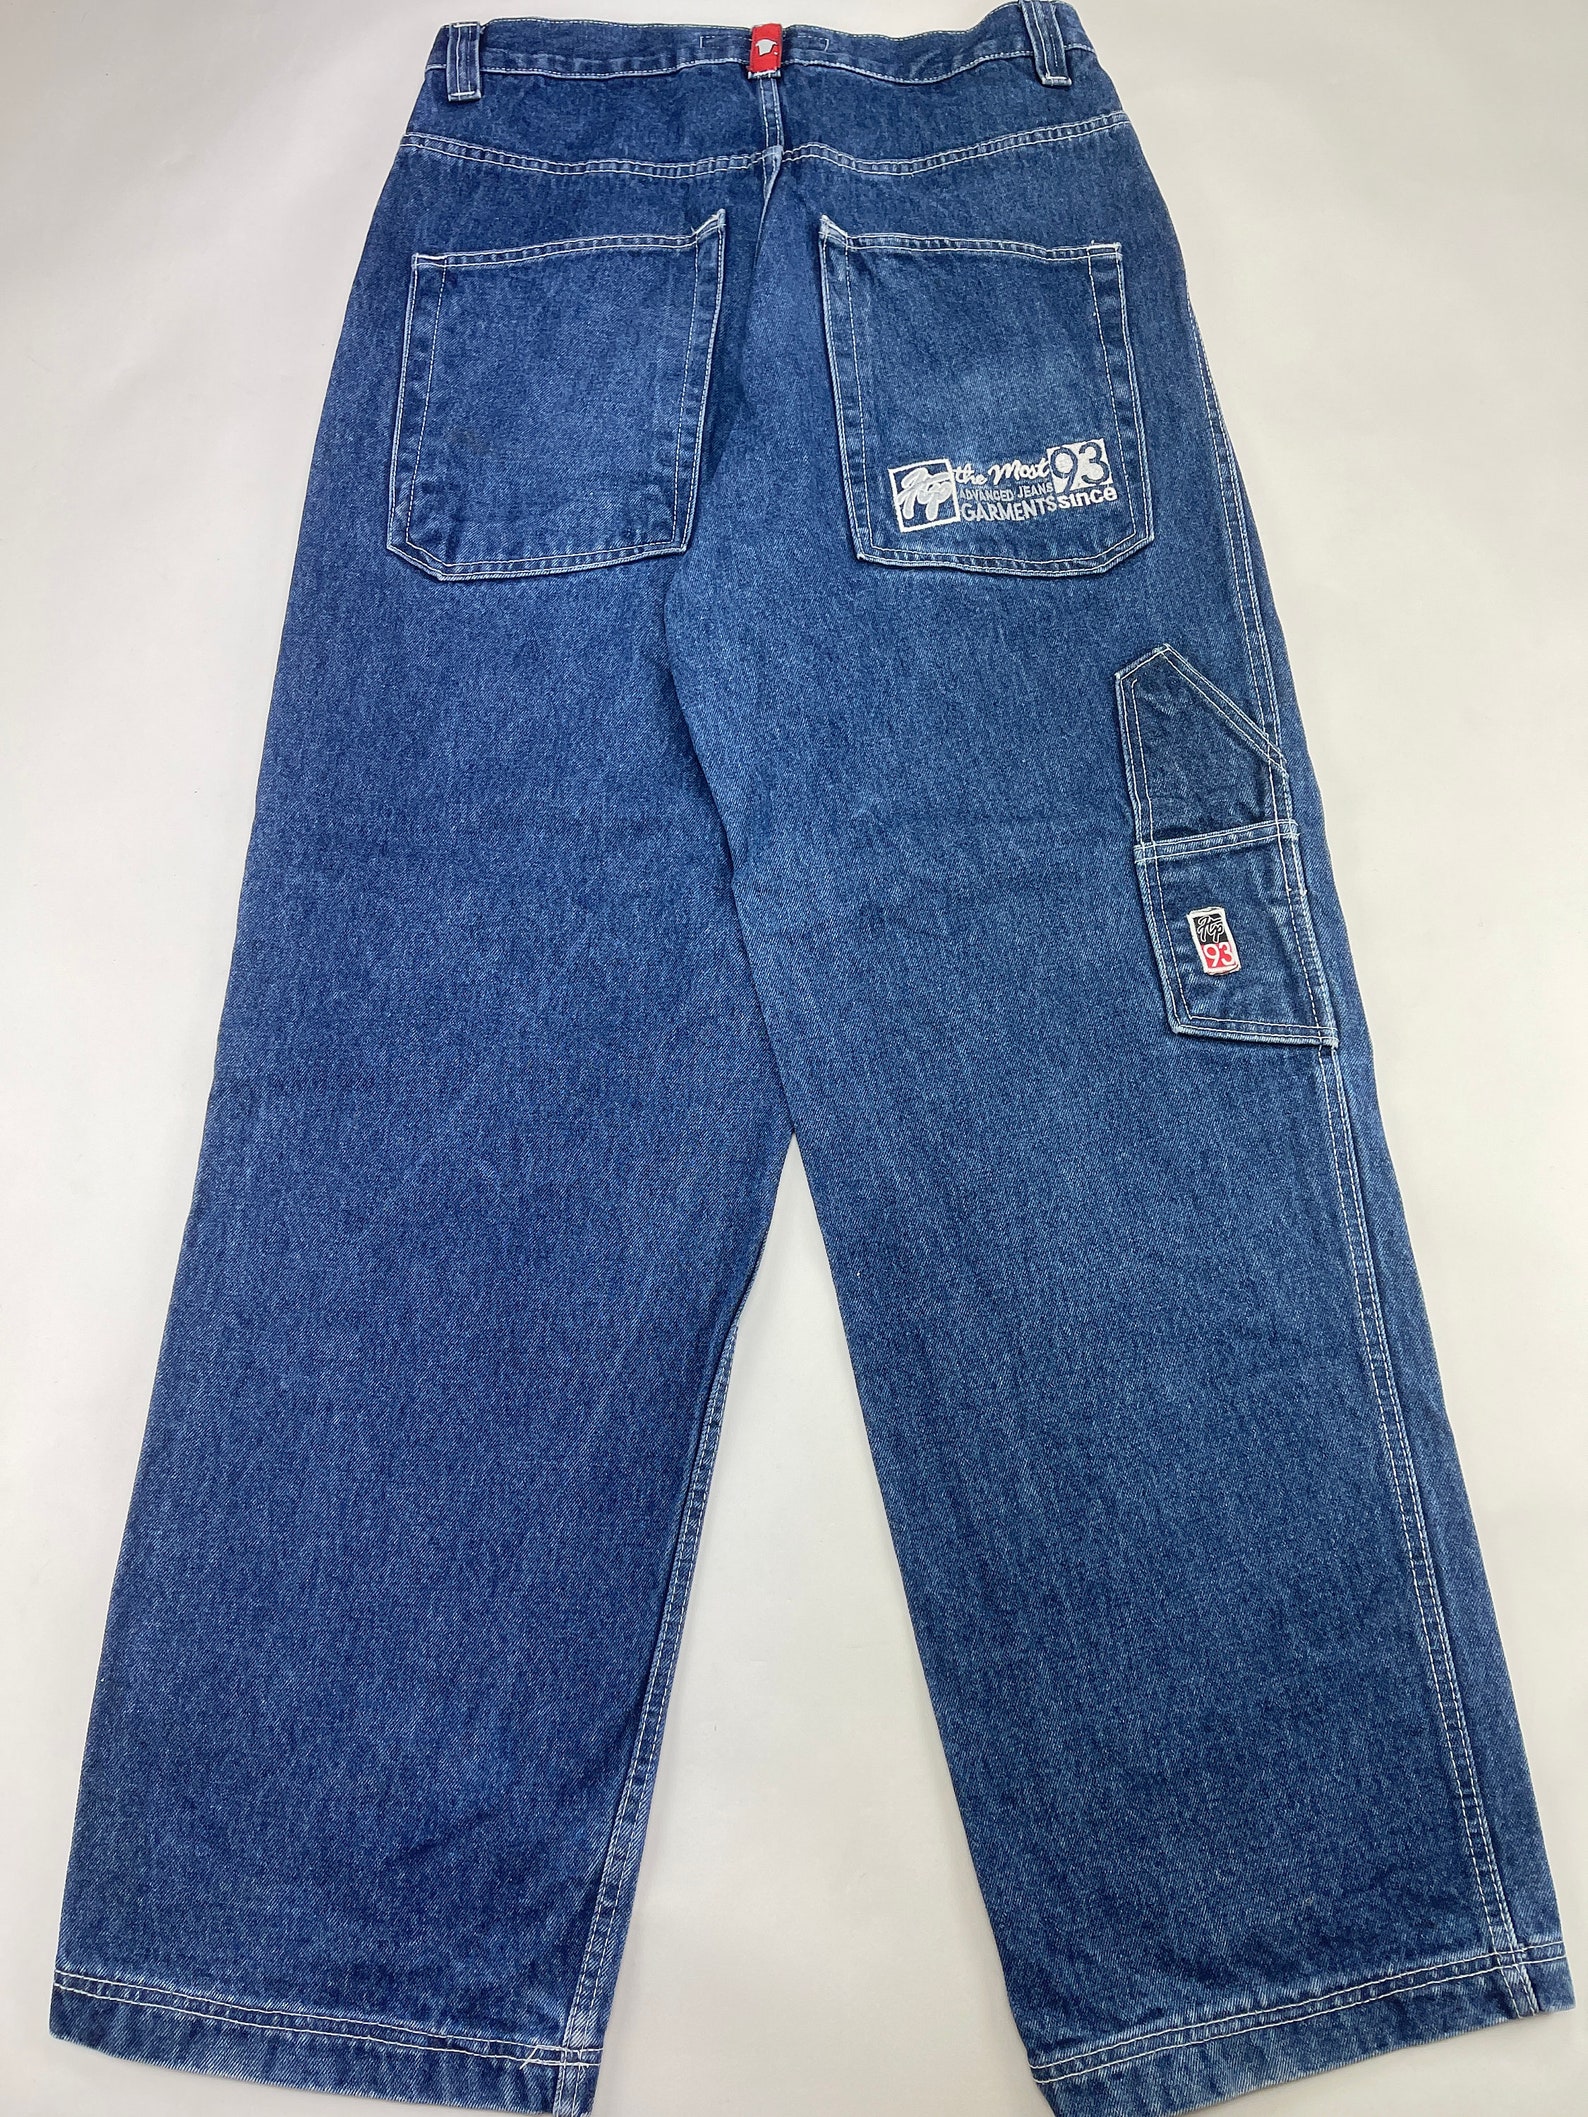 Freeman T. Porter jeans blue vintage carpenter hip hop baggy | Etsy